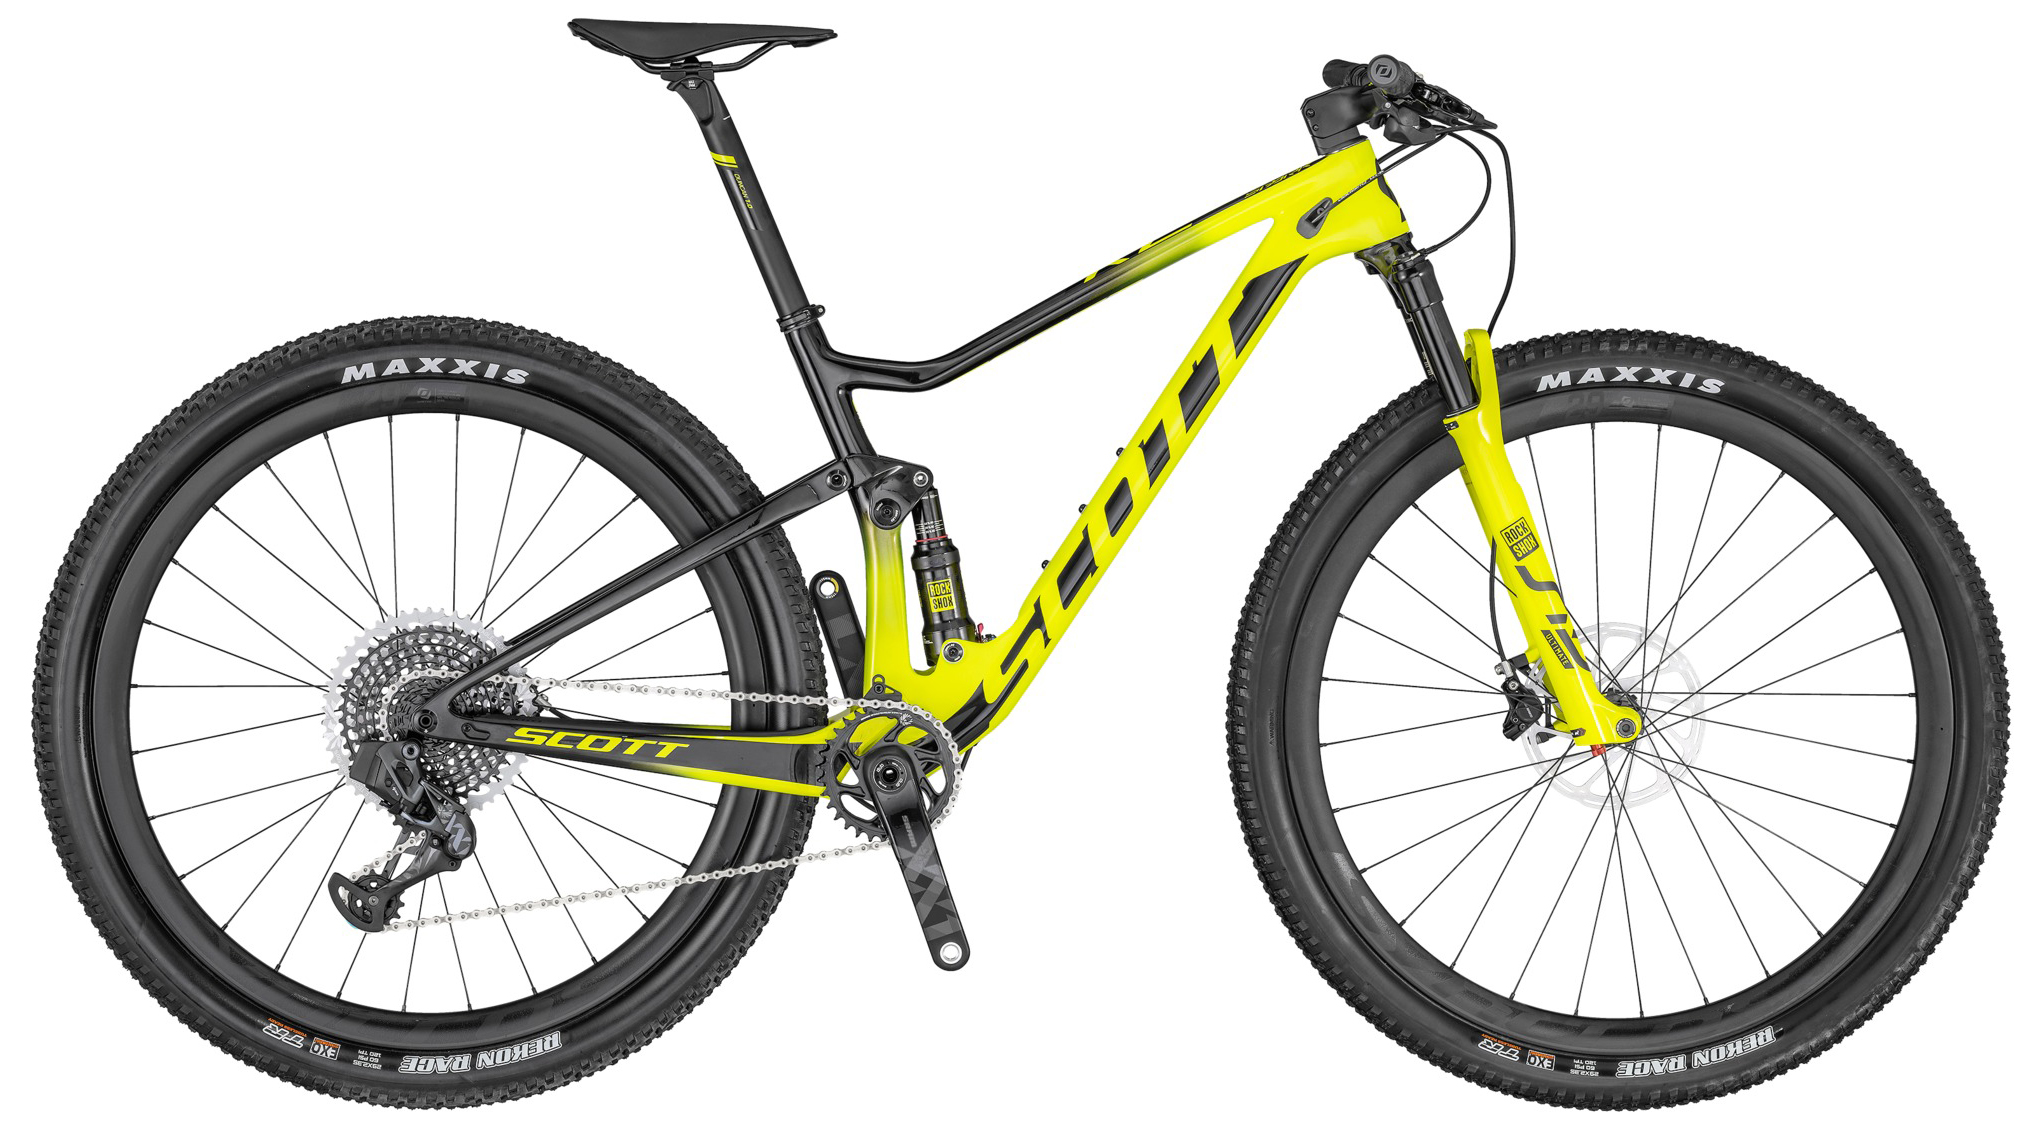  Отзывы о Двухподвесном велосипеде Scott Spark RC 900 World Cup AXS 2020